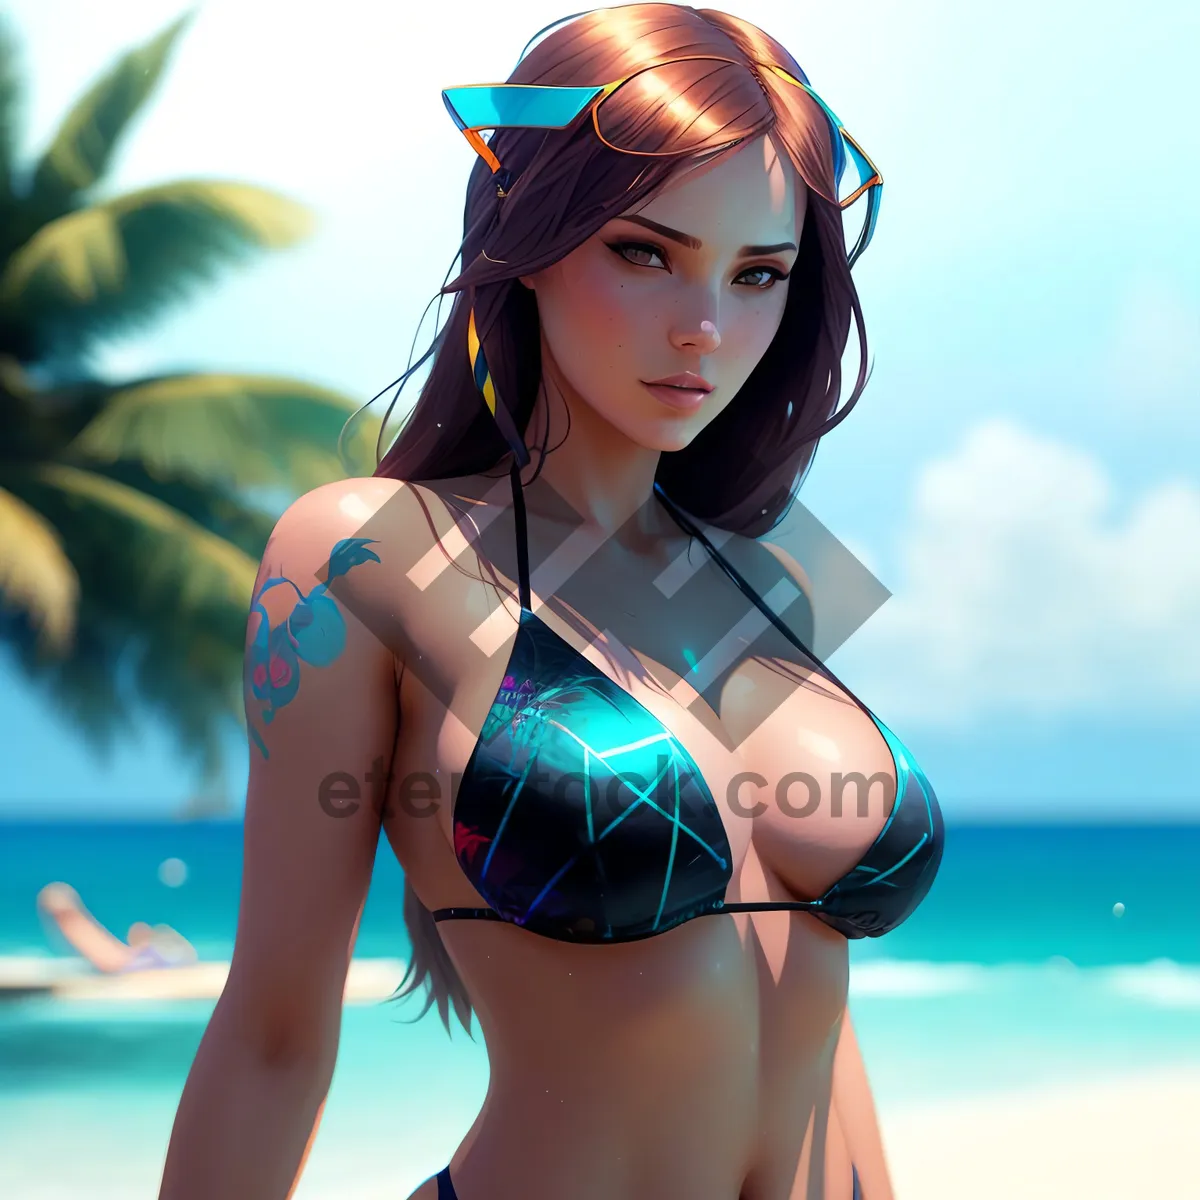 Picture of Seductive Beachwear: Attractive Bikini for Summer Fun